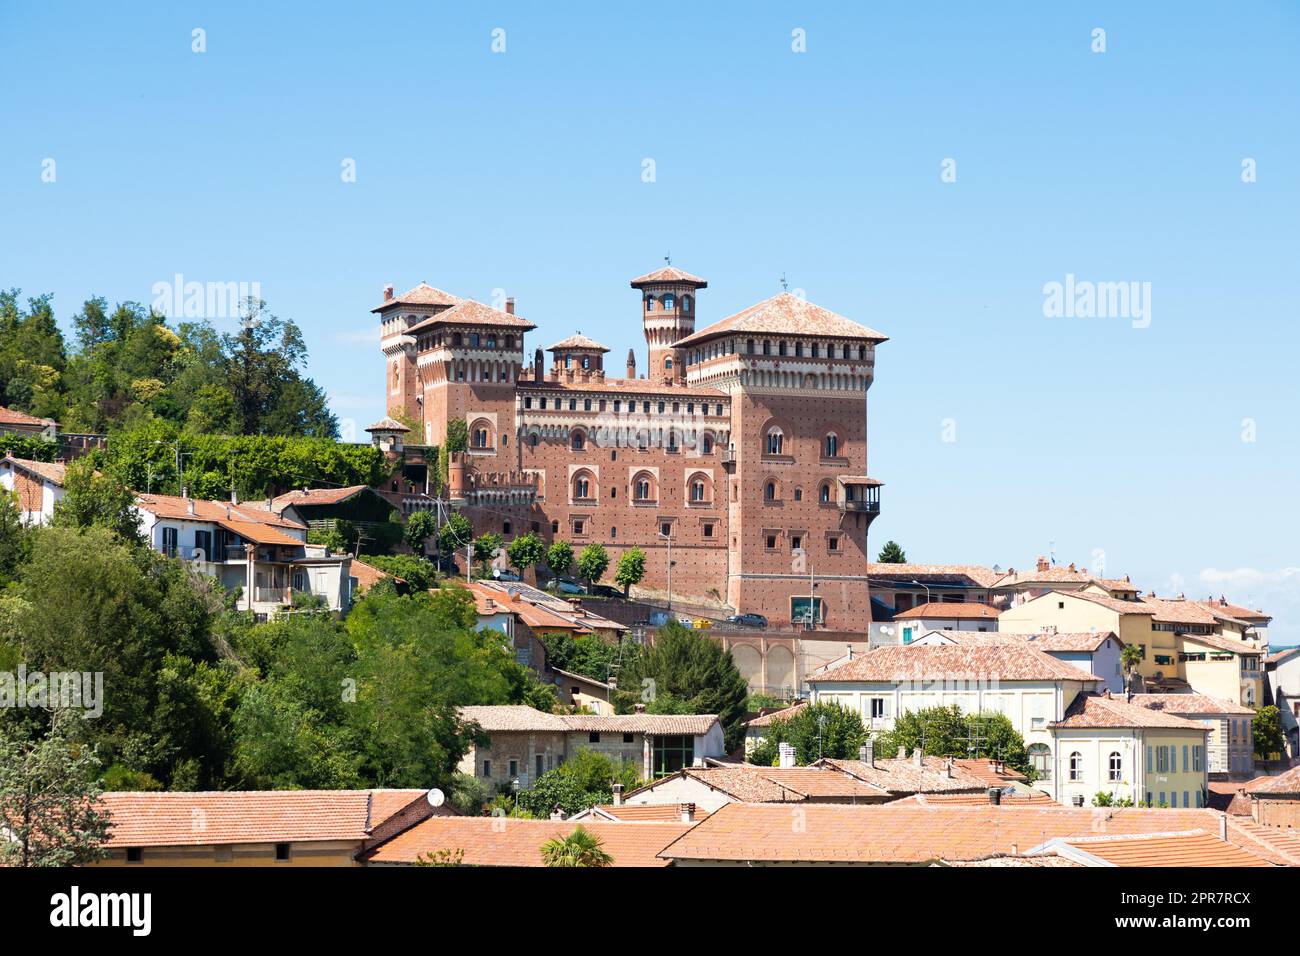 Cereseto Castle - Castello di Cereseto - Monferrato area in Piedmont region, Italy Stock Photo